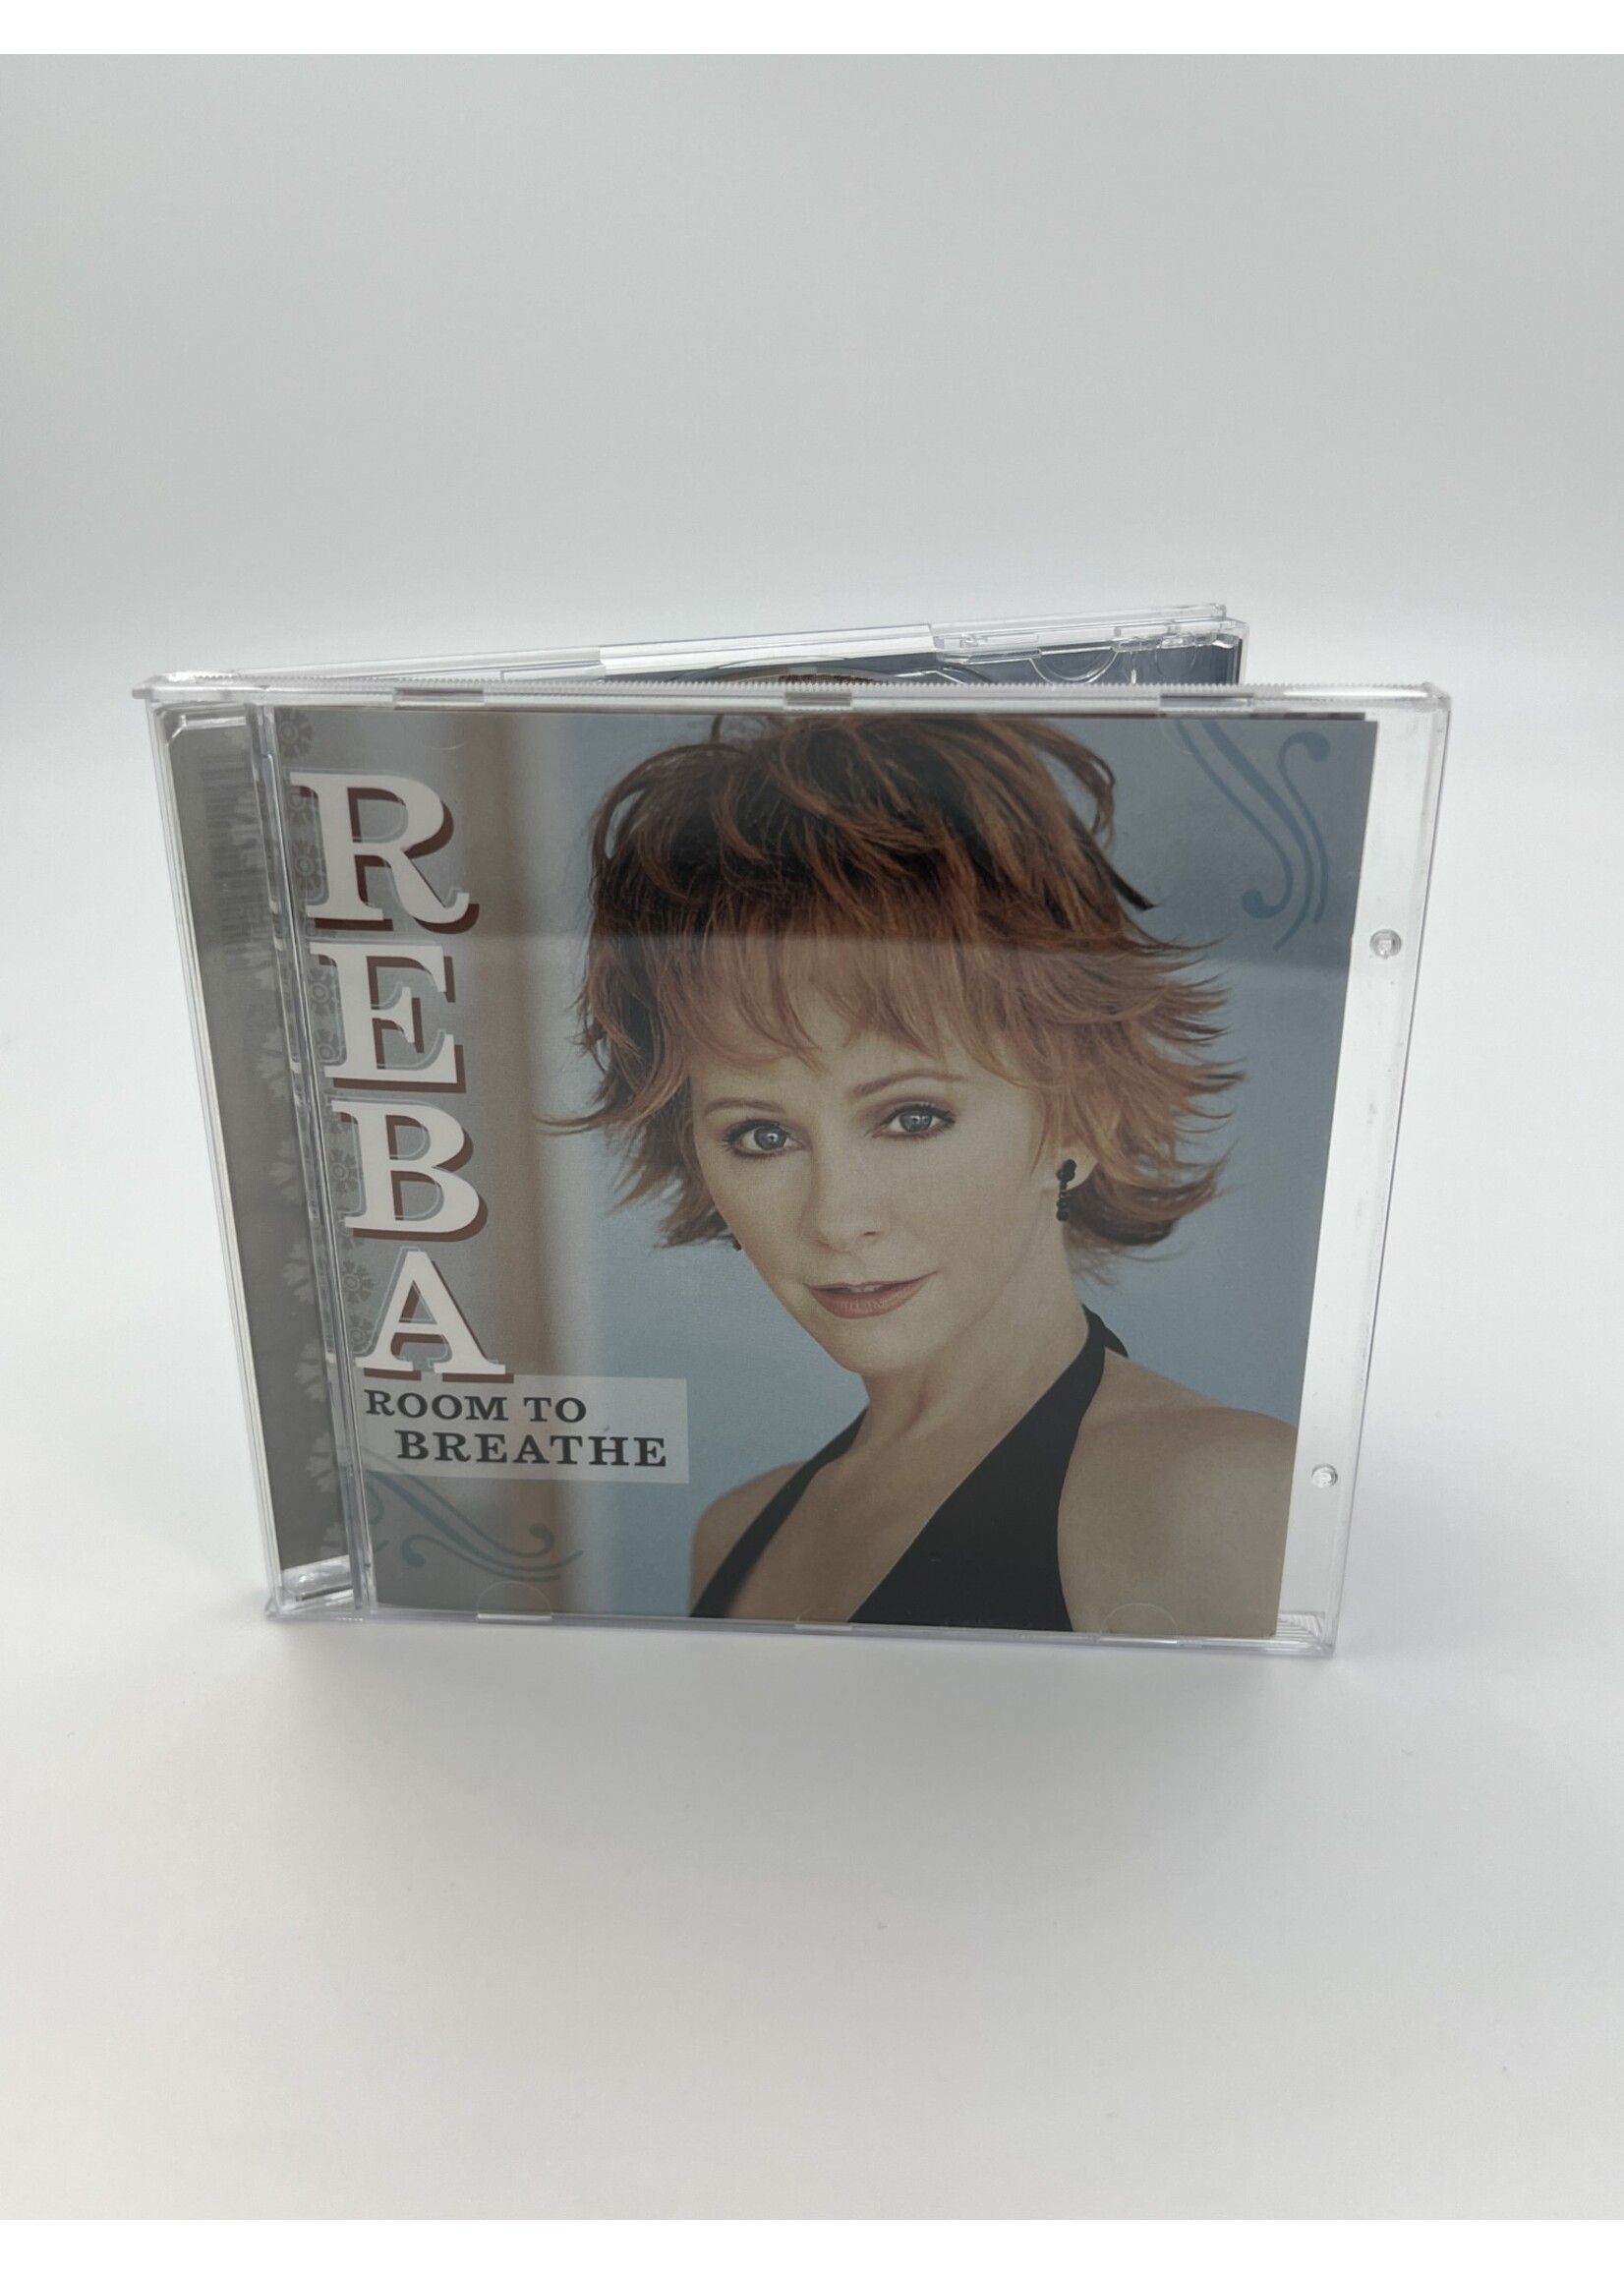 CD Reba Room To Breathe CD